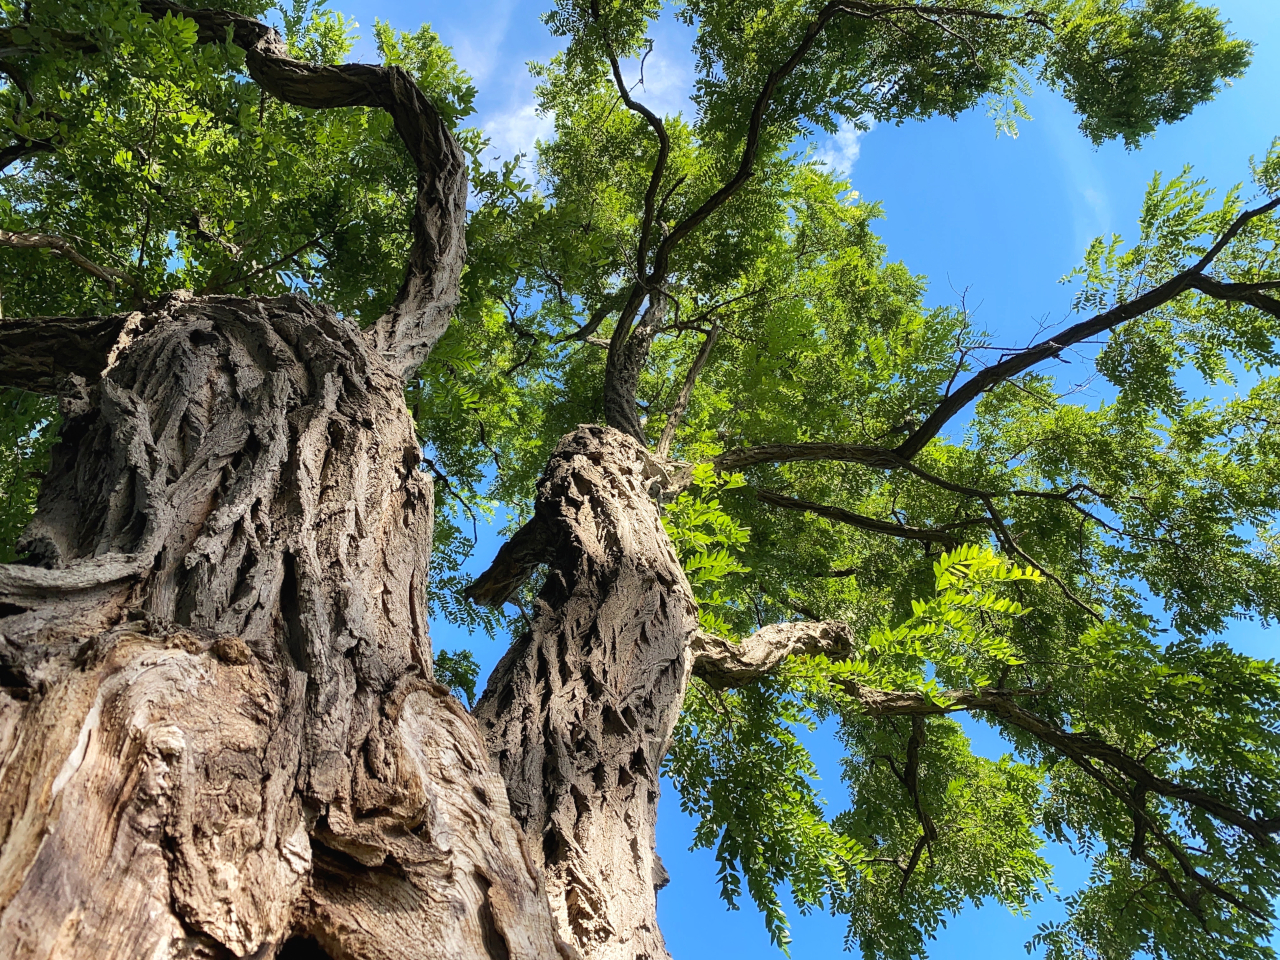 Der Robinienbaum wächst besonders schnell und produziert dabei dennoch ein sehr hartes Holz.